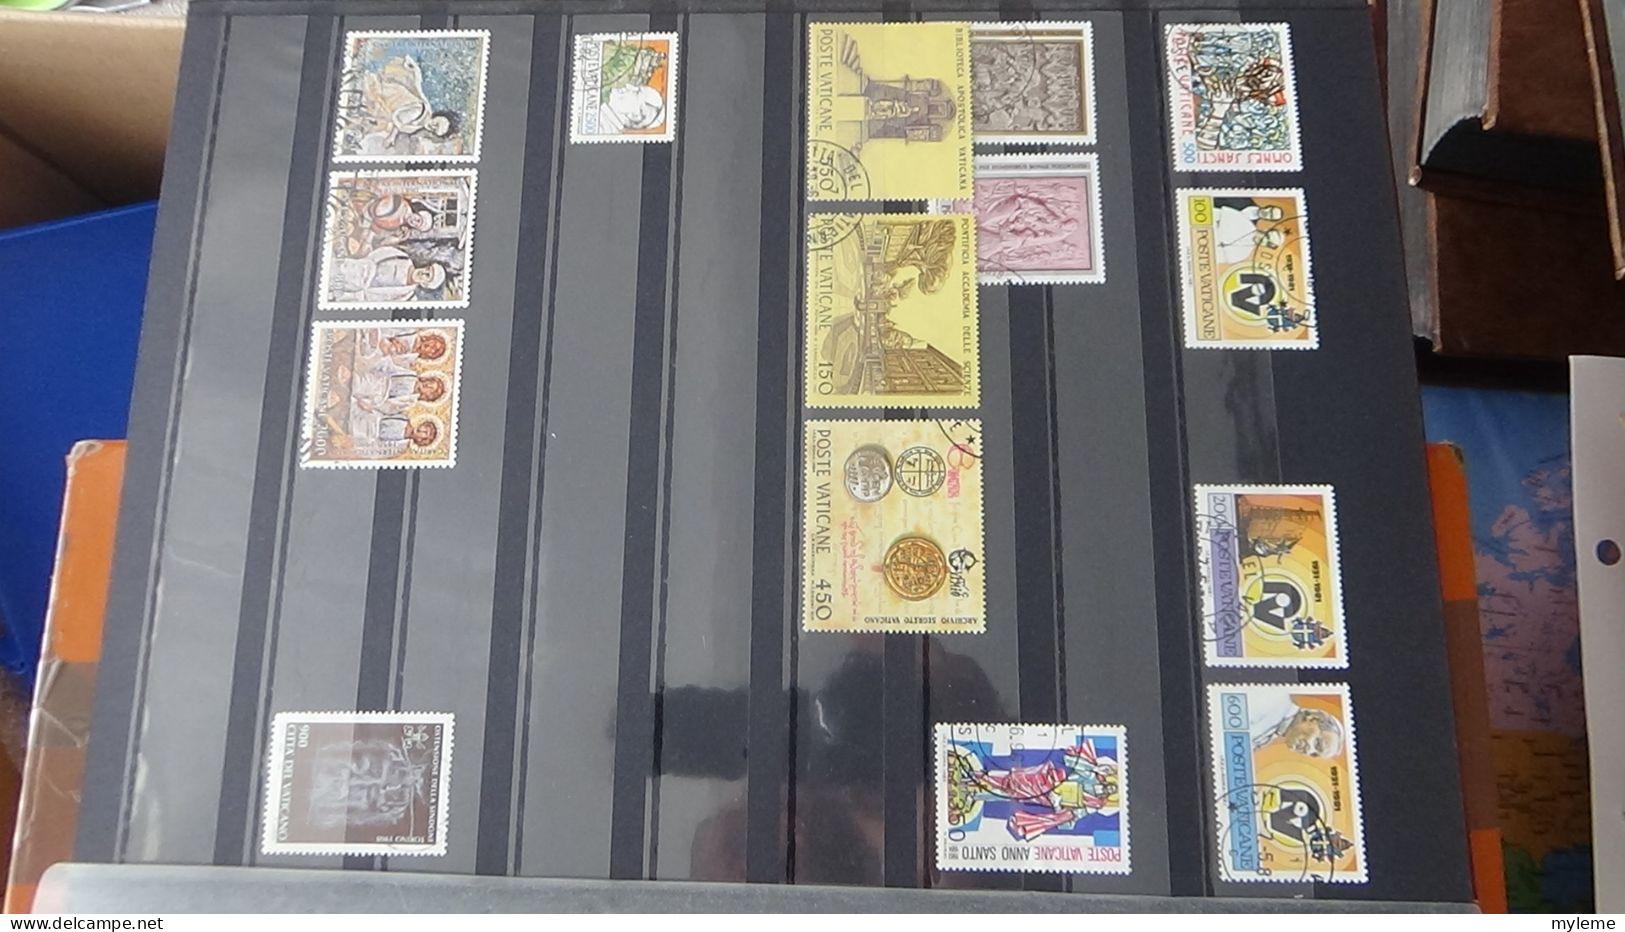 BF16 Ensemble de timbres et blocs du Vatican  A saisir !!!.